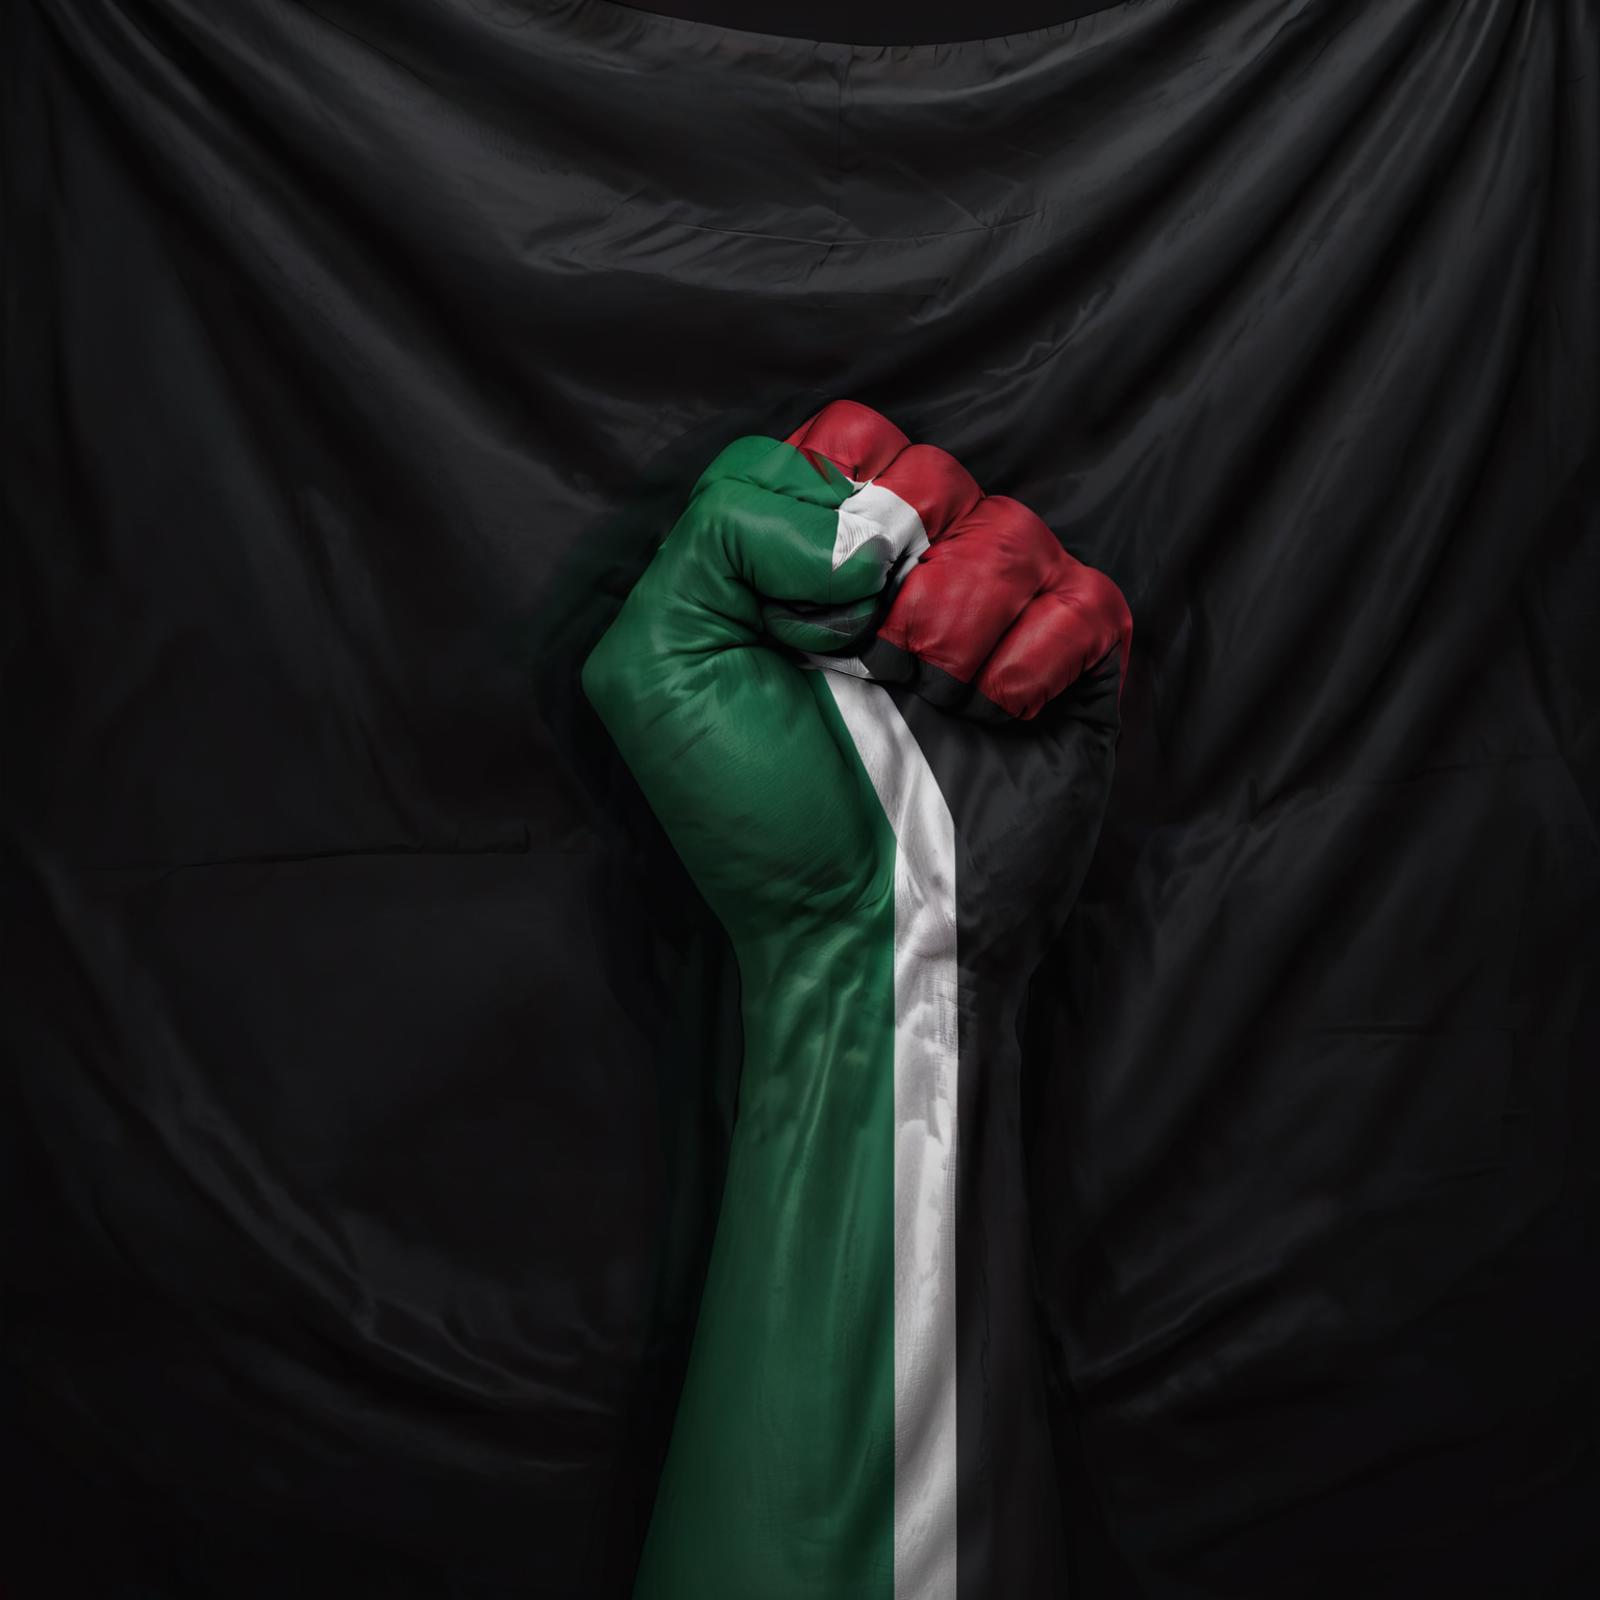 PalestineFlagSdxl image by razansaeed1701